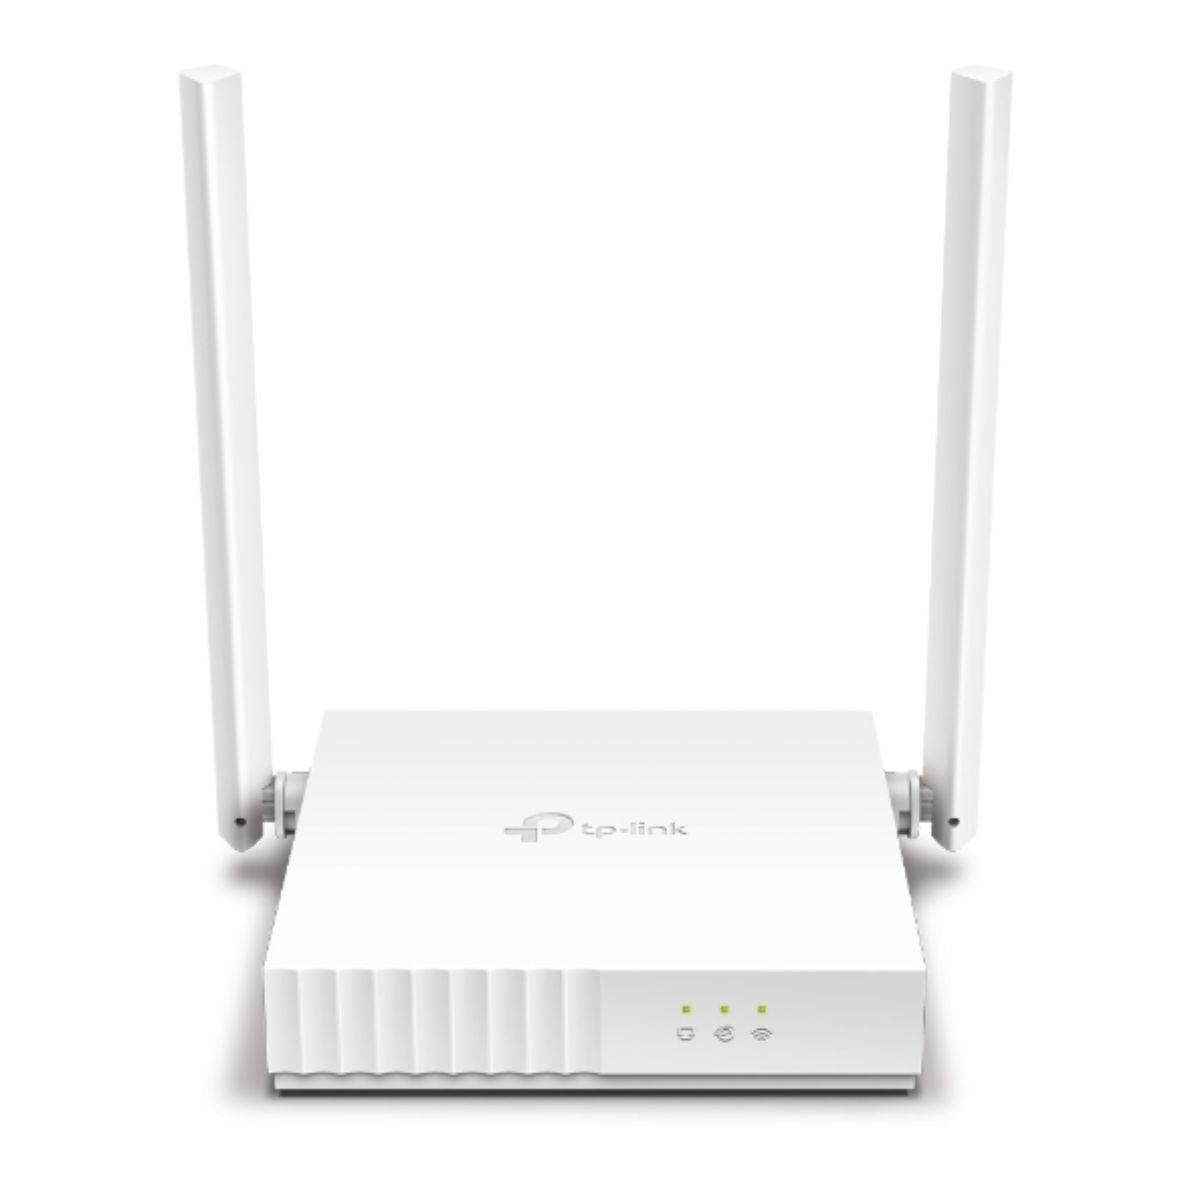 Bộ phát wifi chuẩn N TP-Link TL-WR820N tốc độ Wi-Fi lên đến 300Mbps trên 2.4GHz